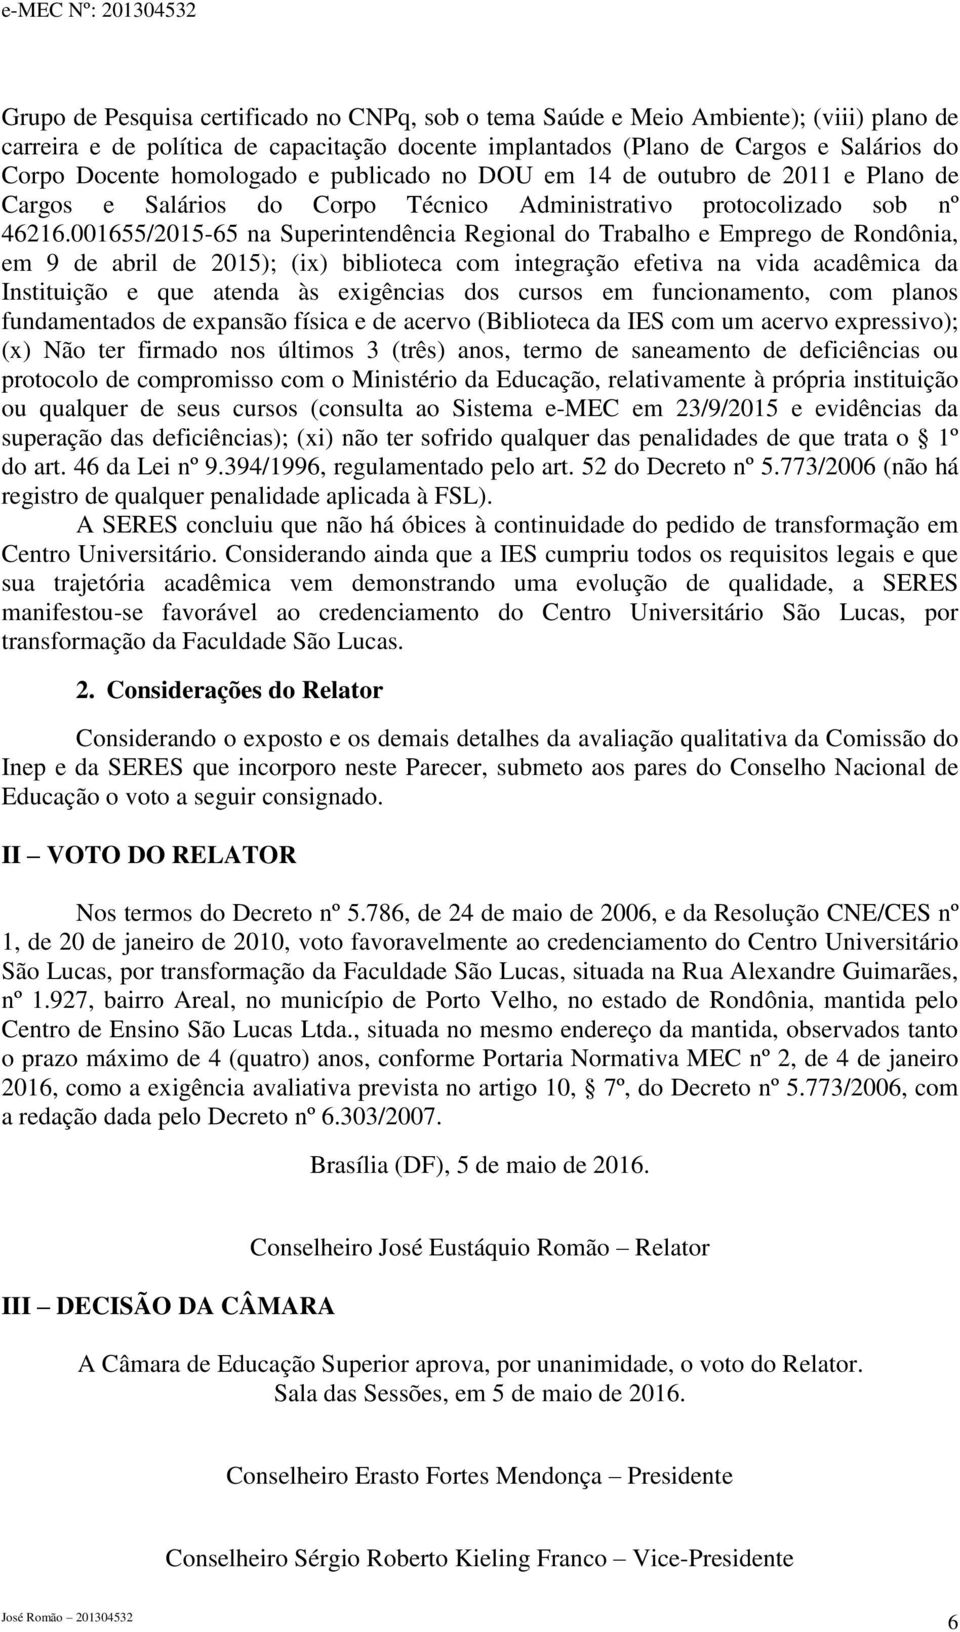 001655/2015-65 na Superintendência Regional do Trabalho e Emprego de Rondônia, em 9 de abril de 2015); (ix) biblioteca com integração efetiva na vida acadêmica da Instituição e que atenda às